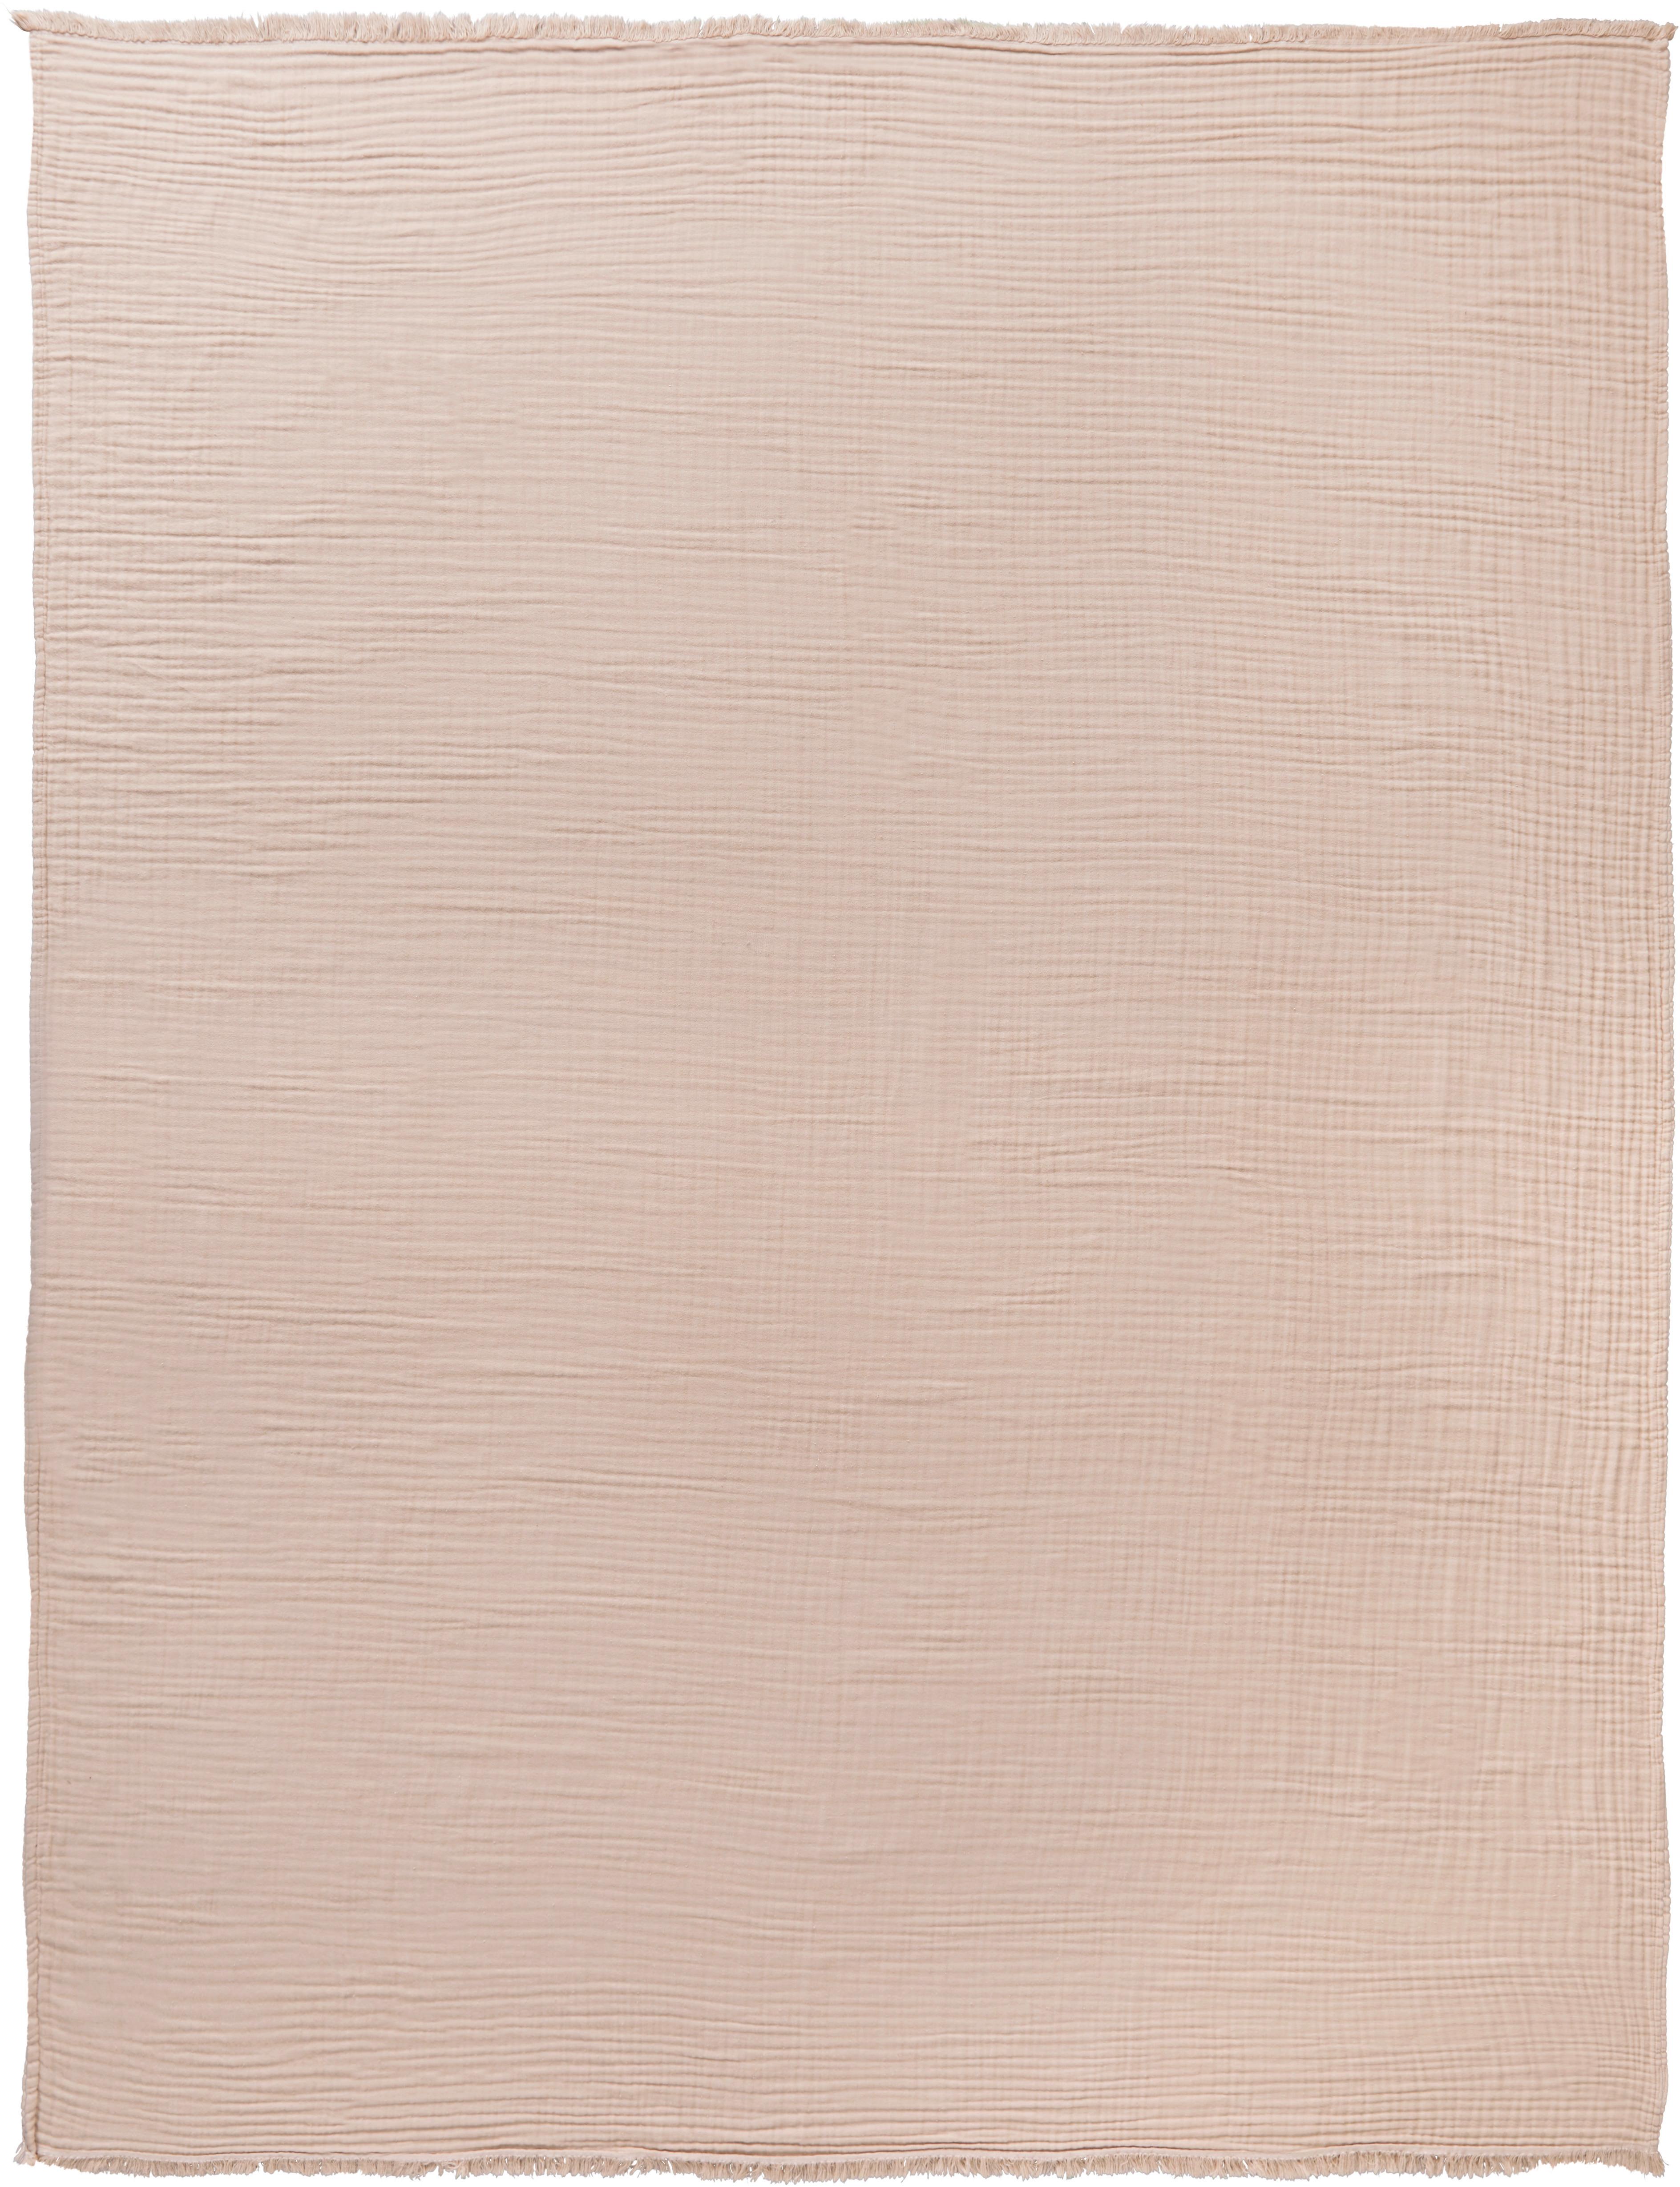 Denní Deka Mirsa, 150/210cm, Růžová - růžová, Moderní, textil (150/210cm) - Premium Living